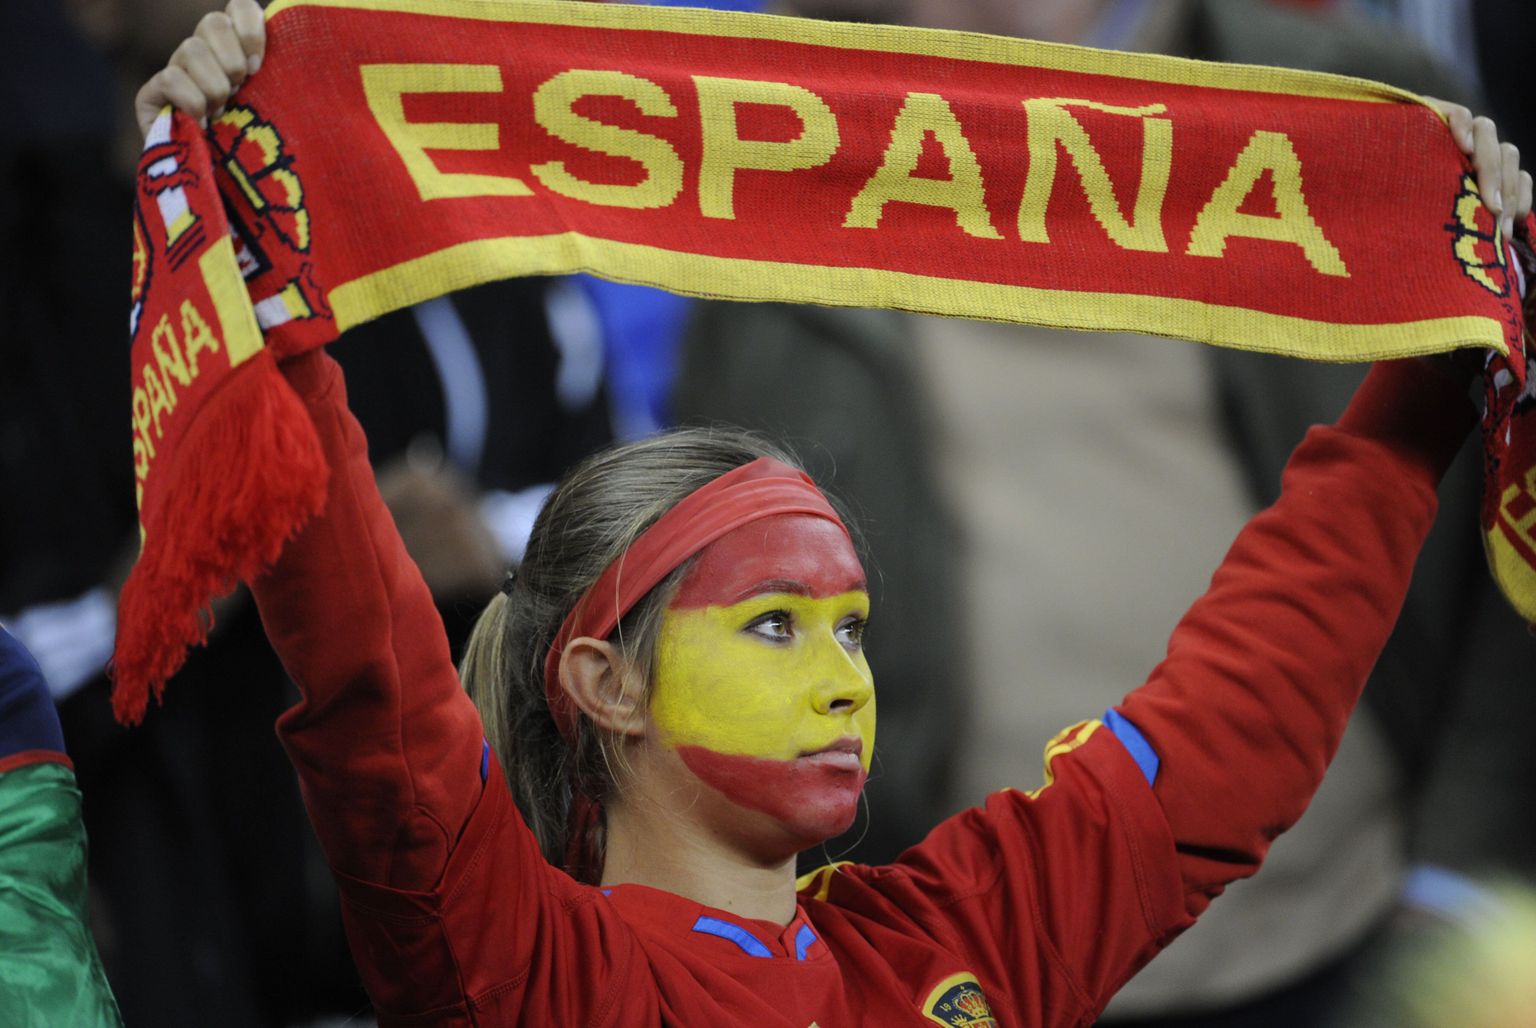 Hispaania reiting langes